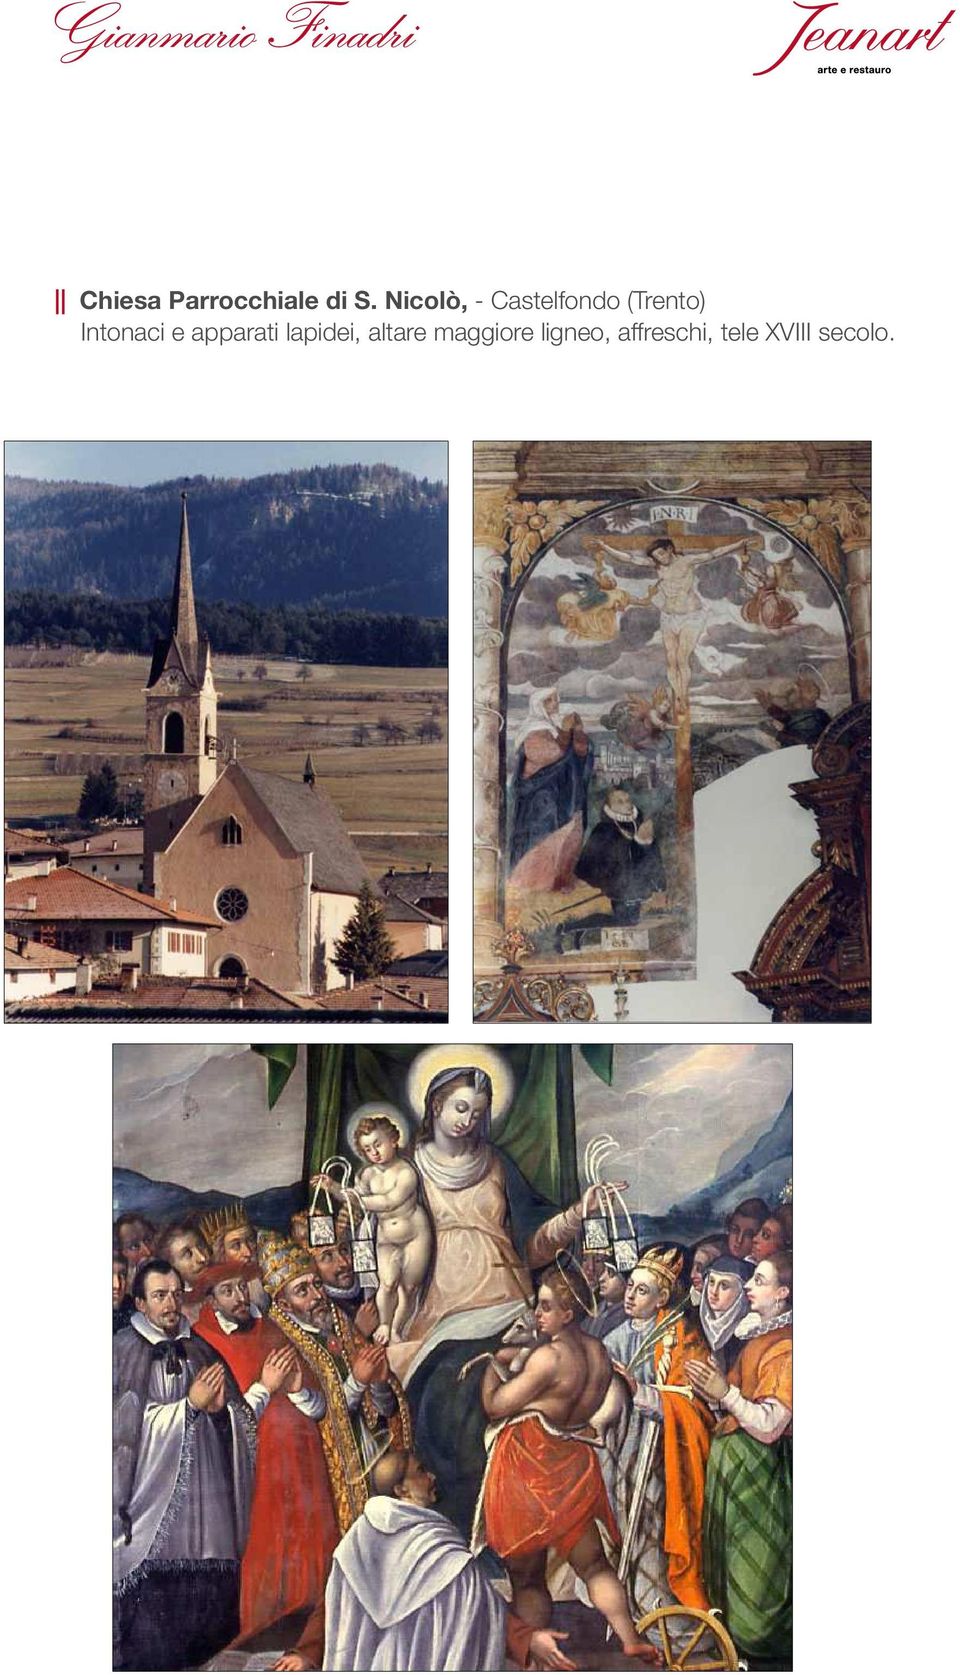 maggiore ligneo, affreschi, tele XVIII secolo.